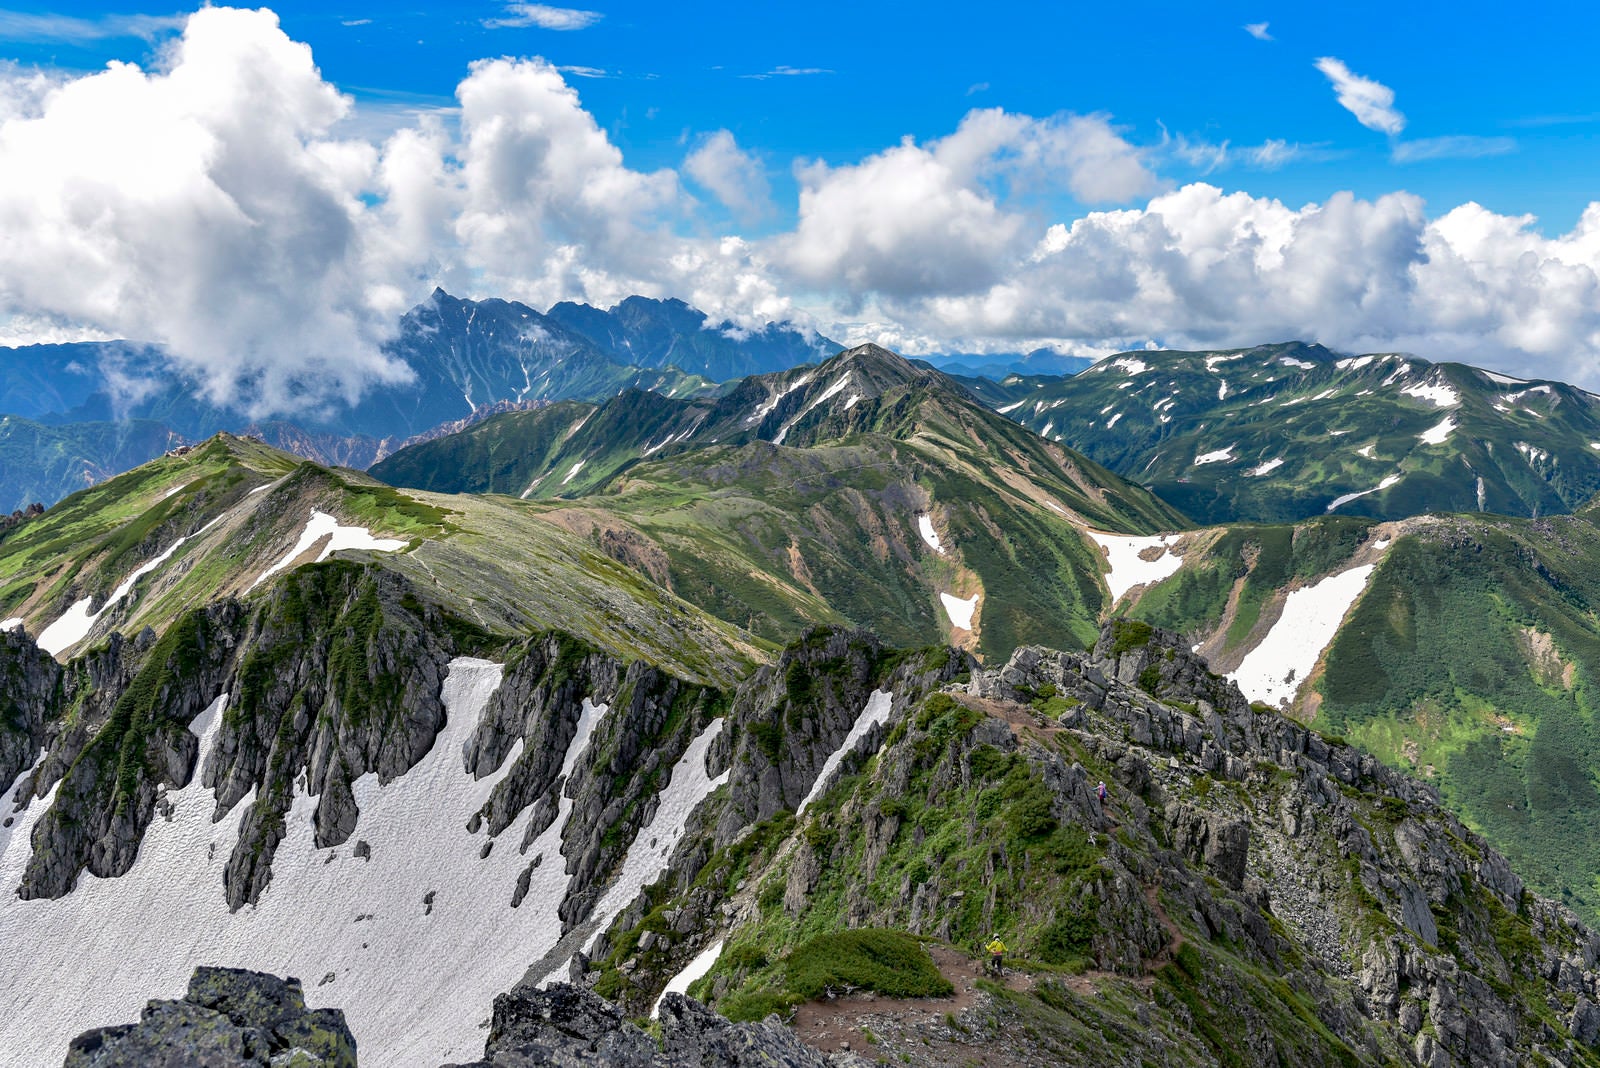 「水晶岳山頂から見る鷲羽岳と北アルプス南部の景色」の写真